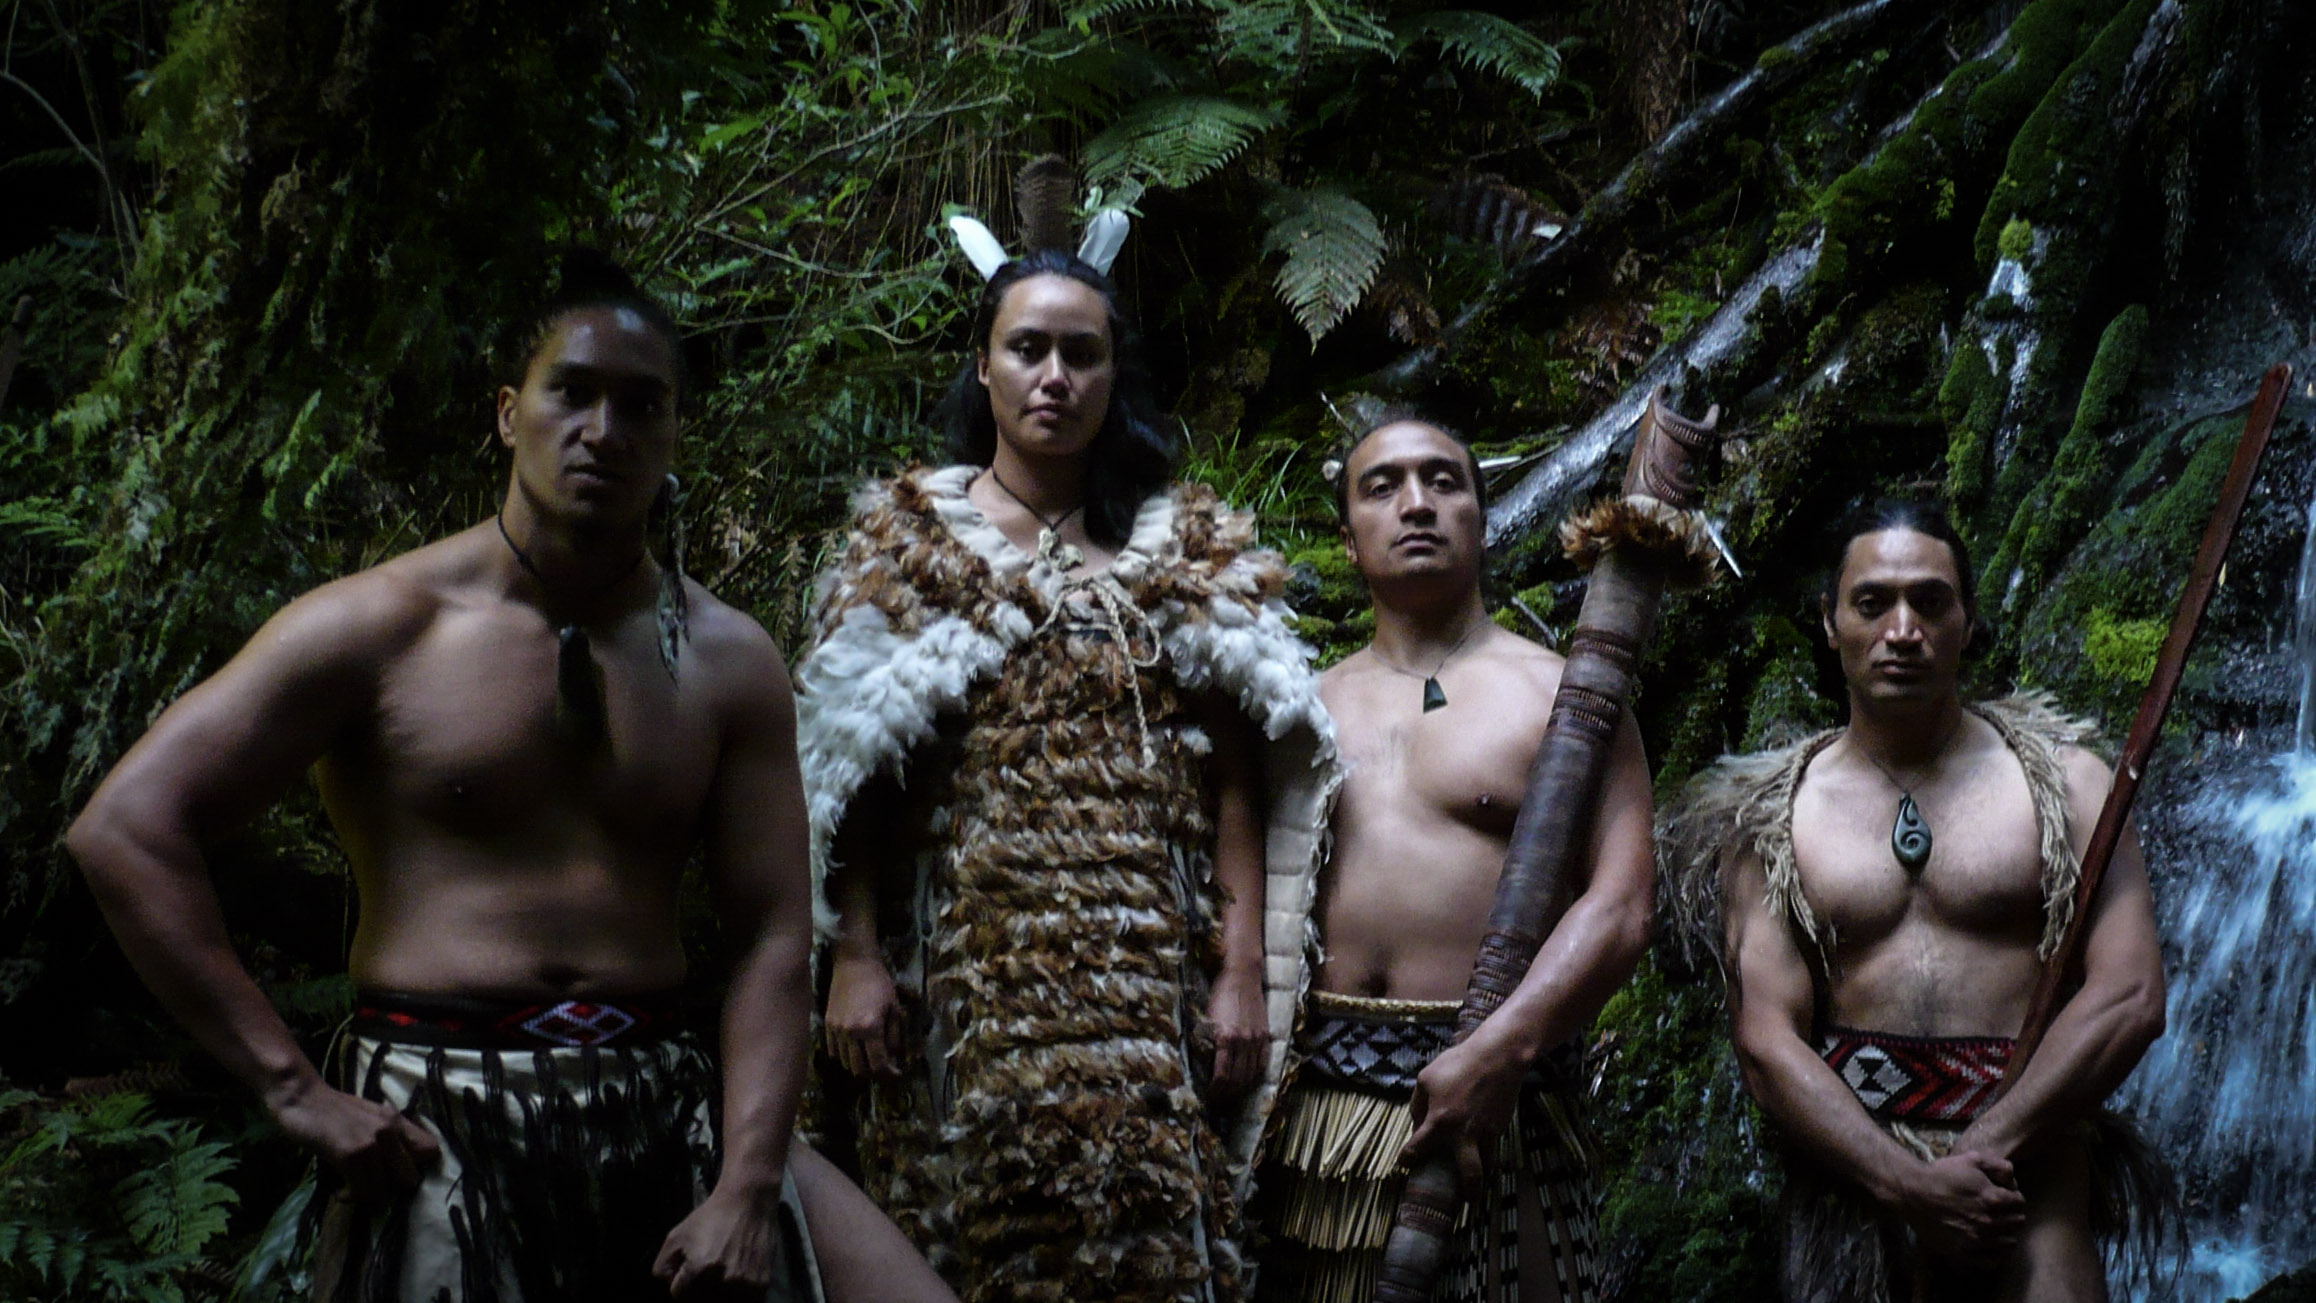 Maori cultural experience